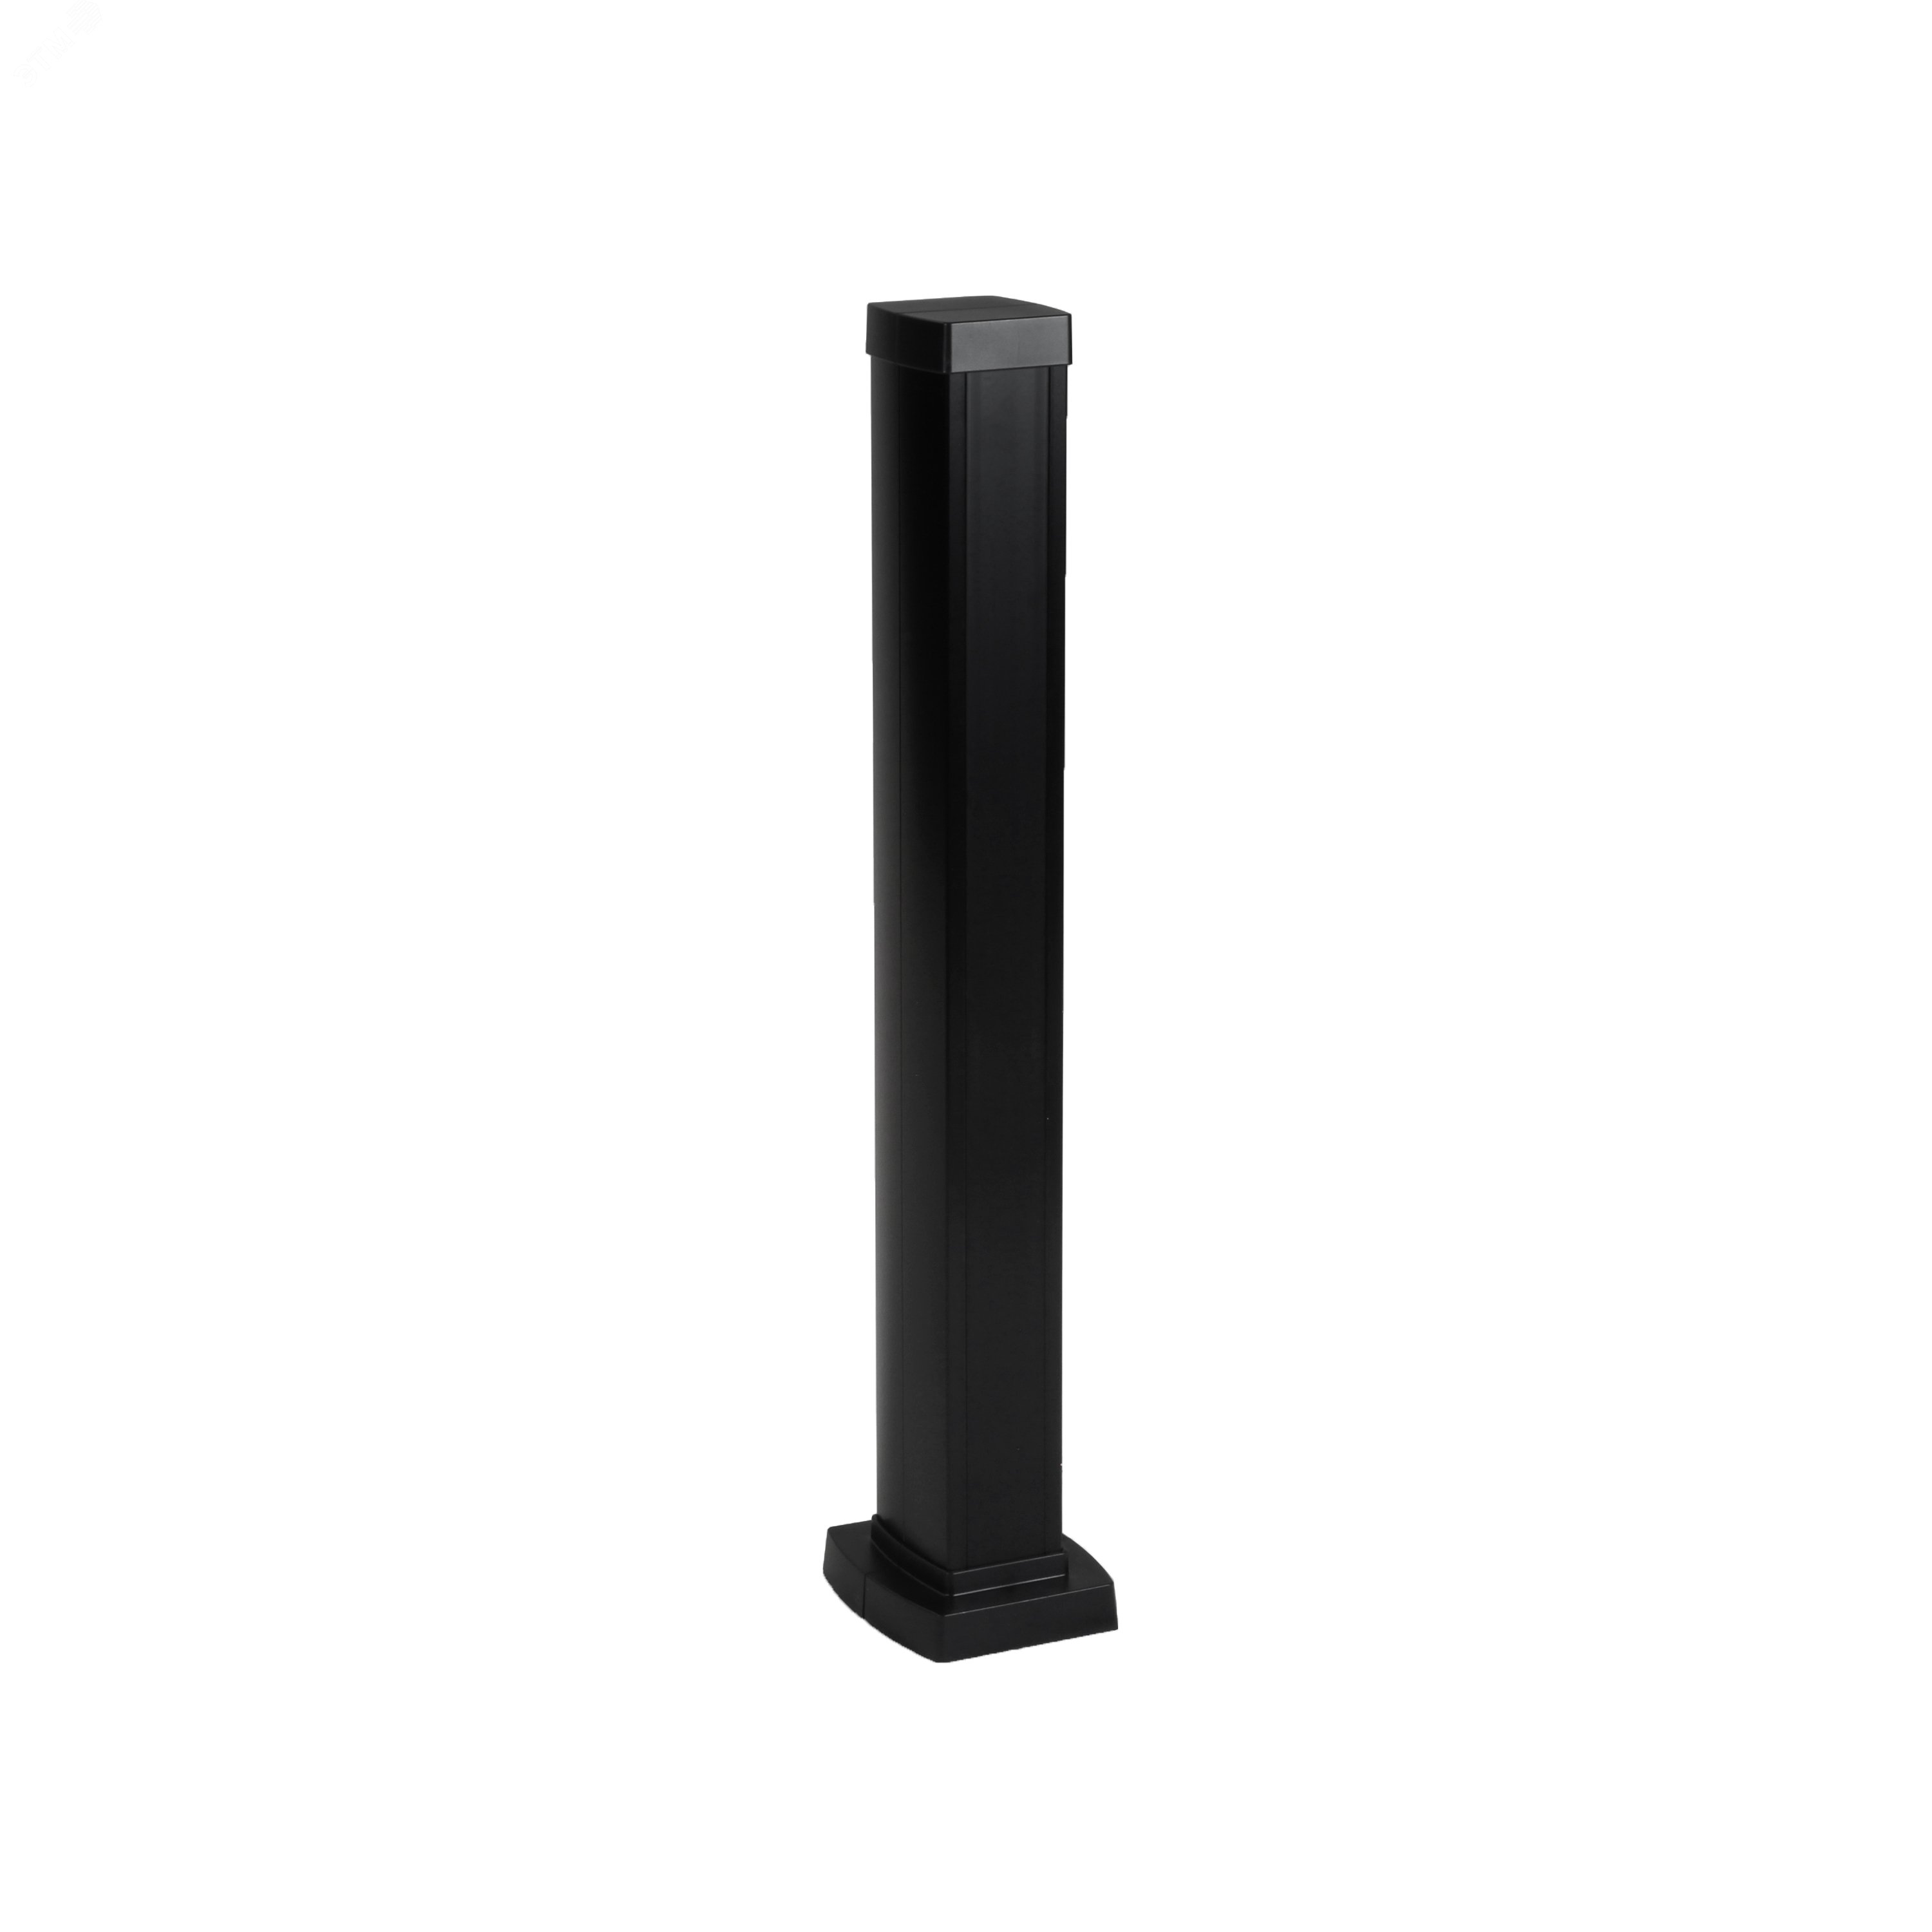 Snap-On мини-колонна алюминиевая с крышкой из пластика 1 секция, высота 0,68 метра, цвет черный 653005 Legrand - превью 2